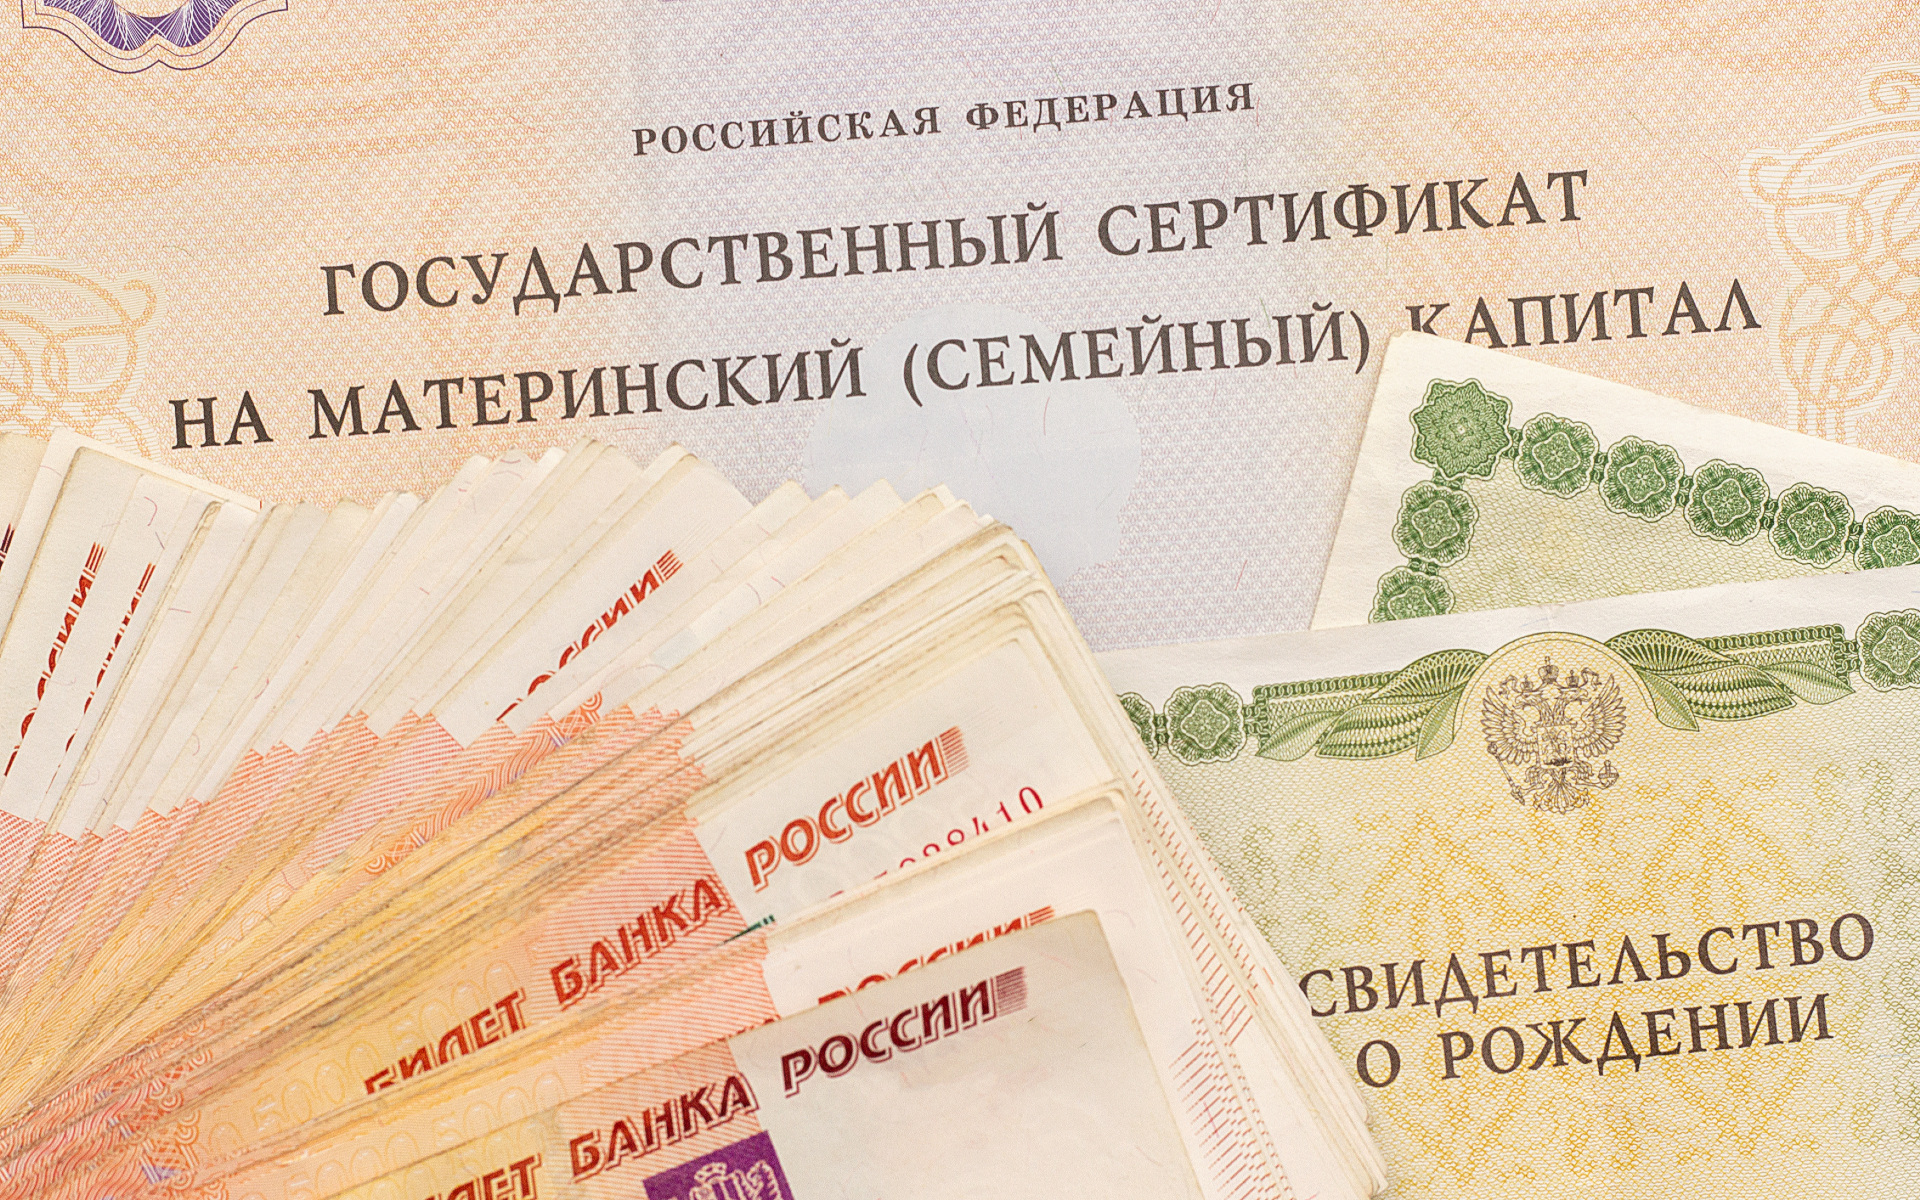 В случае получения сертификата размер материнского капитала увеличится на 4% и составит 503 237 рублей